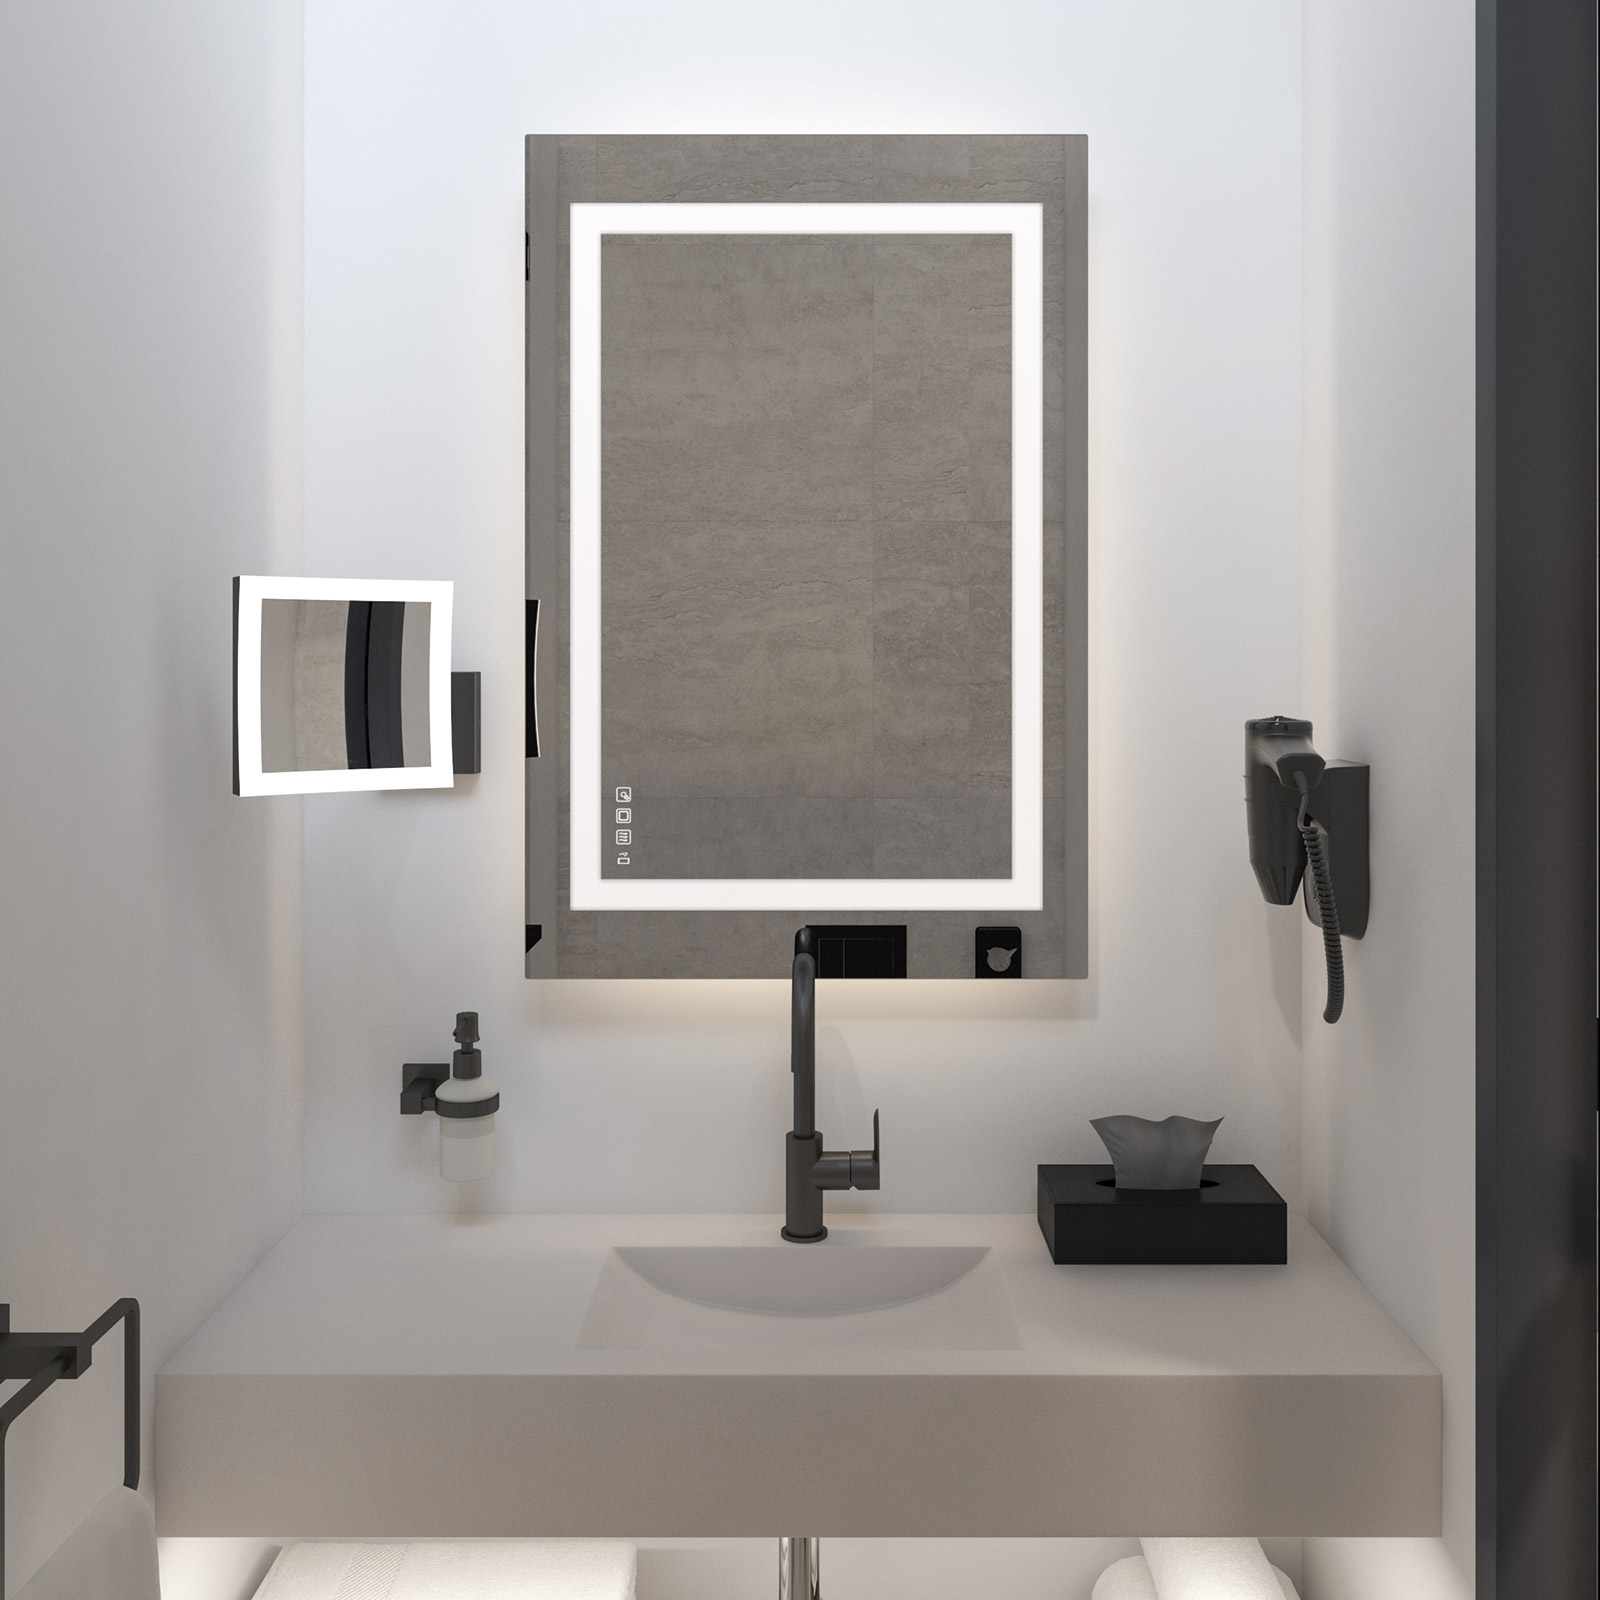 Der beheizbare und beleuchtete Badezimmerspiegel von Häfele mit integriertem Soundsystem macht die Benutzung des Bads zu einem besonderen Genuss für den Gast.